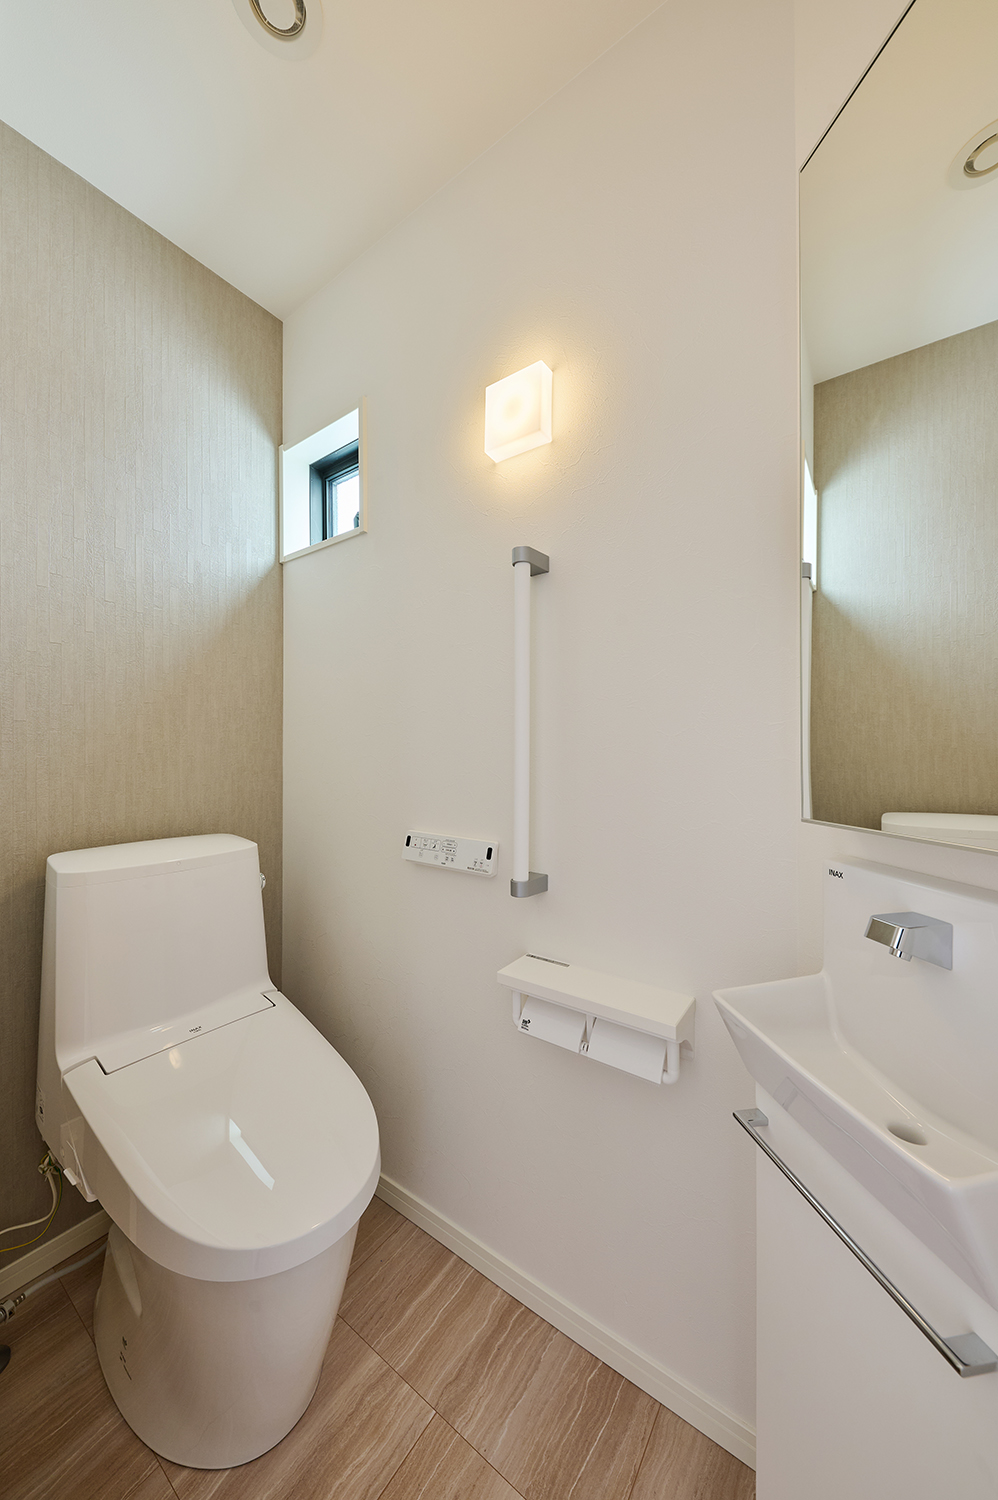 T-1／爽やかなトイレ空間。スッキリとした空間は家族だけでなくゲストにも気持ちよくお使いいただけます。